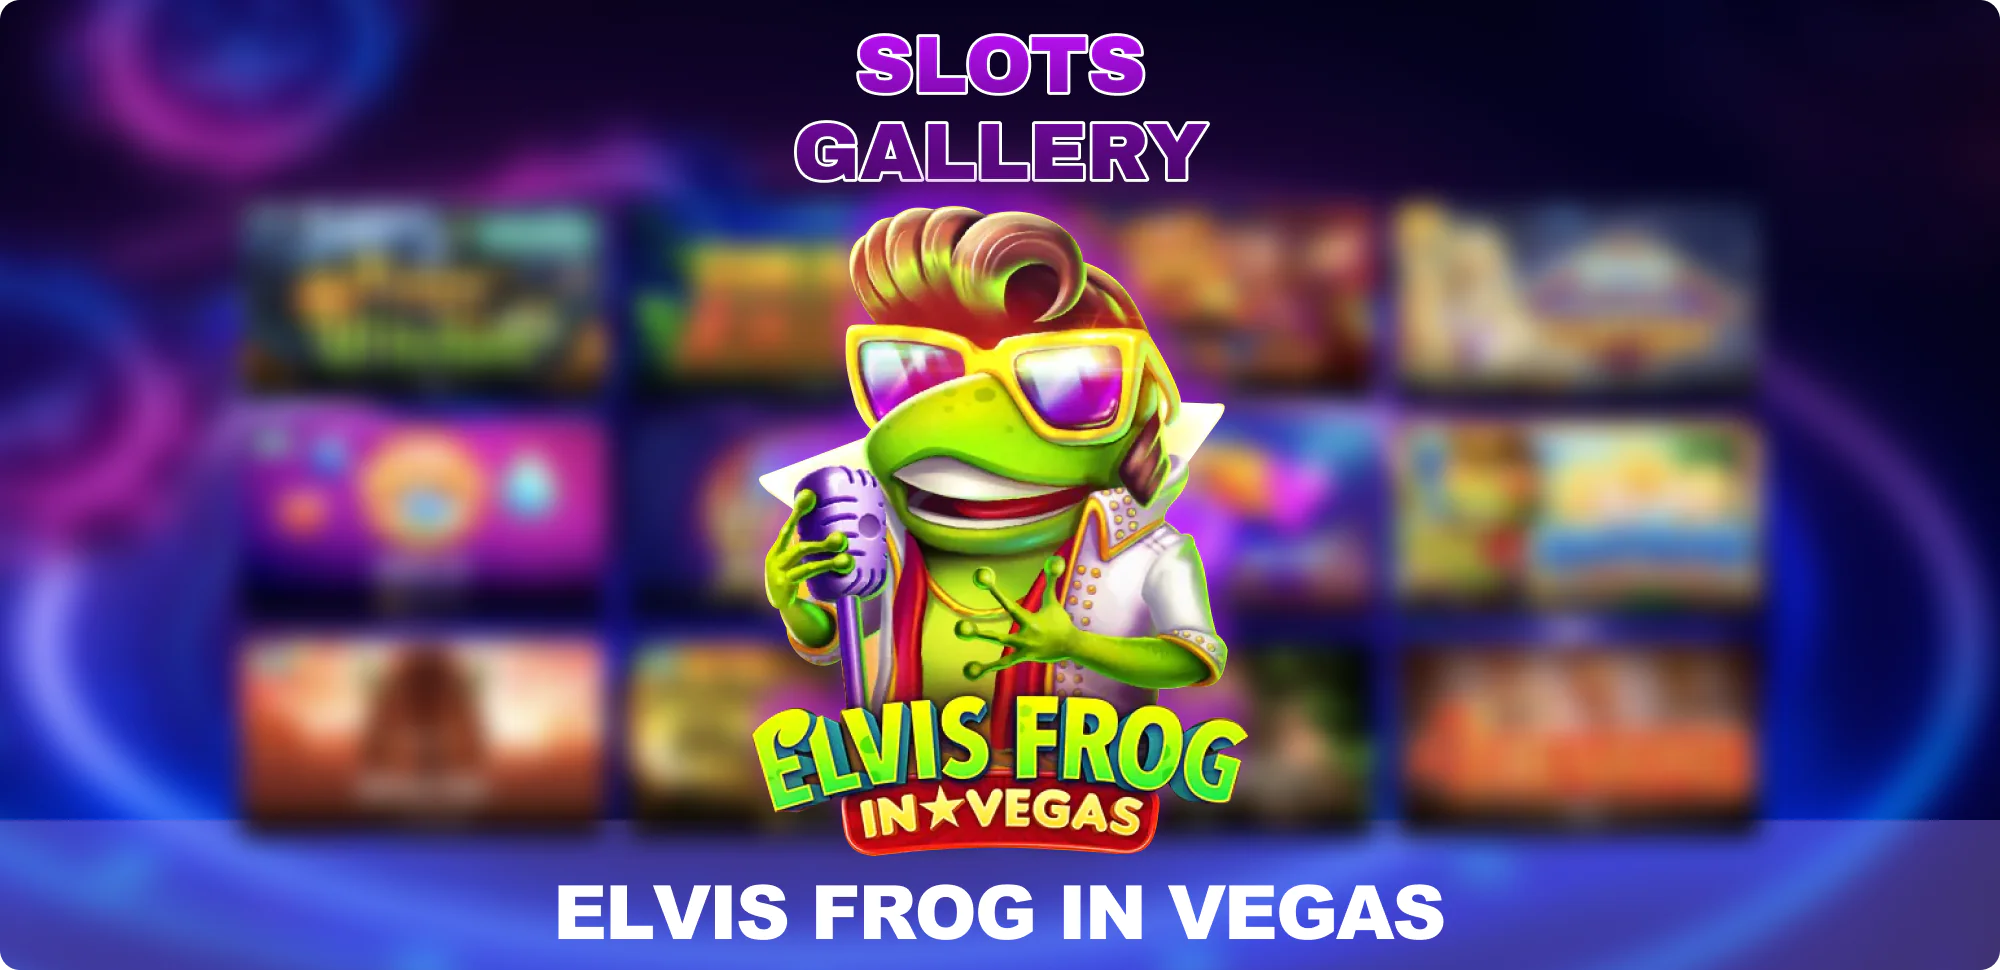 Slots Gallery Casino - Elvis Frog in Vegas slot